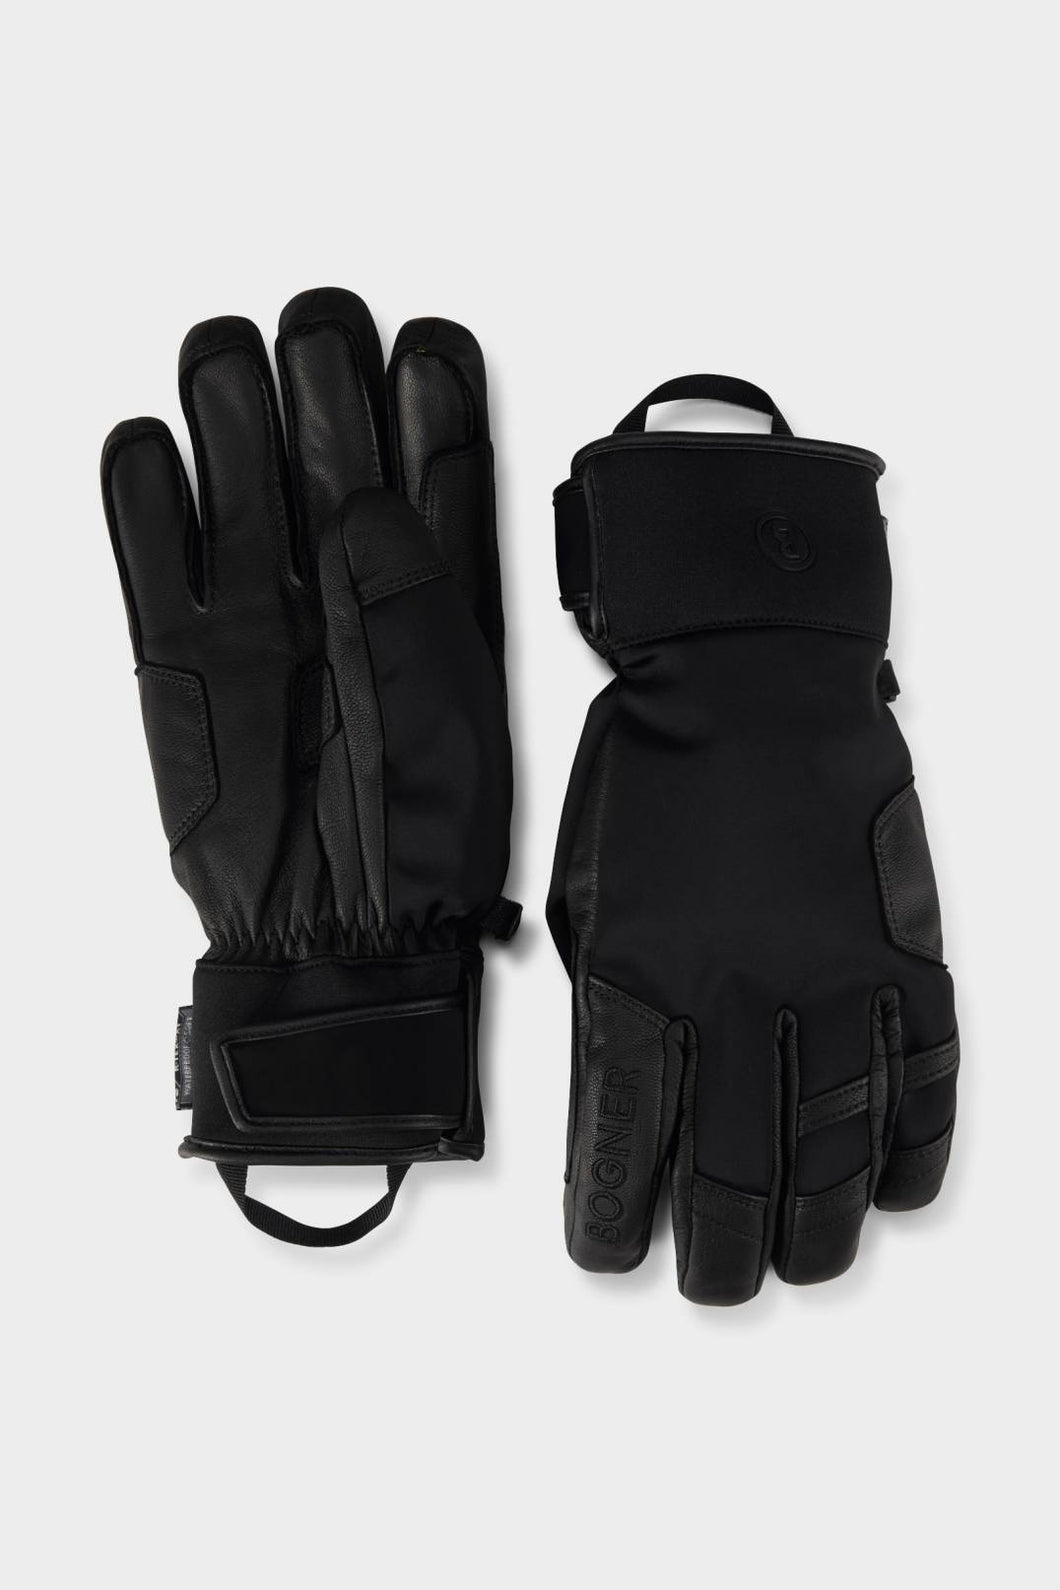 Bogner Pero Ultimate Warmth Ski Gloves - Black